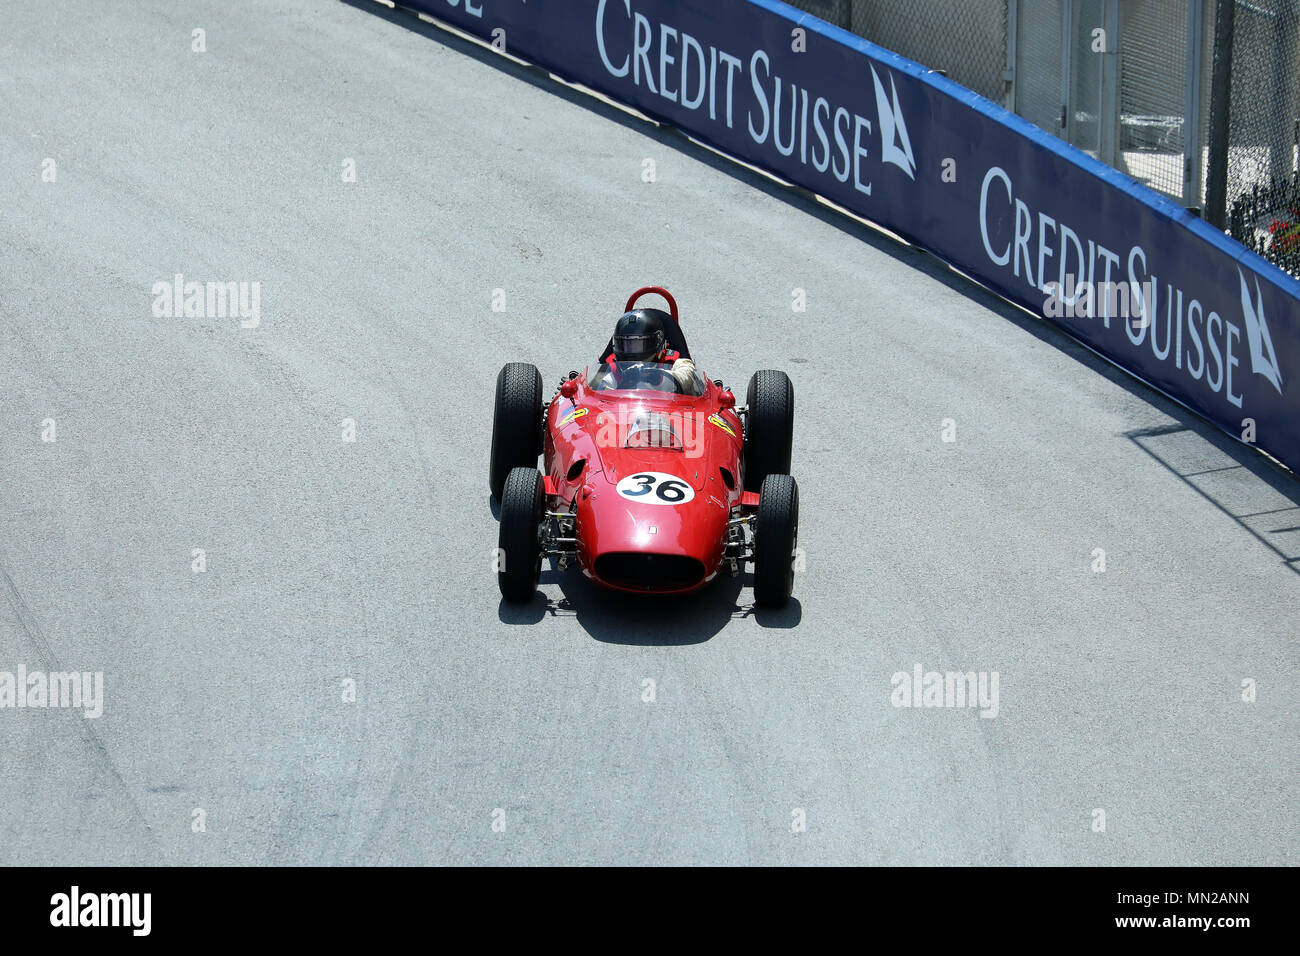 Monte-Carlo, Monaco - May 11, 2018 : Red Ferrari 246 Dino F1 (Also Known As Ferrari 156P), Single Seater Old Racing Car, 11th Grand Prix de Monaco His Stock Photo